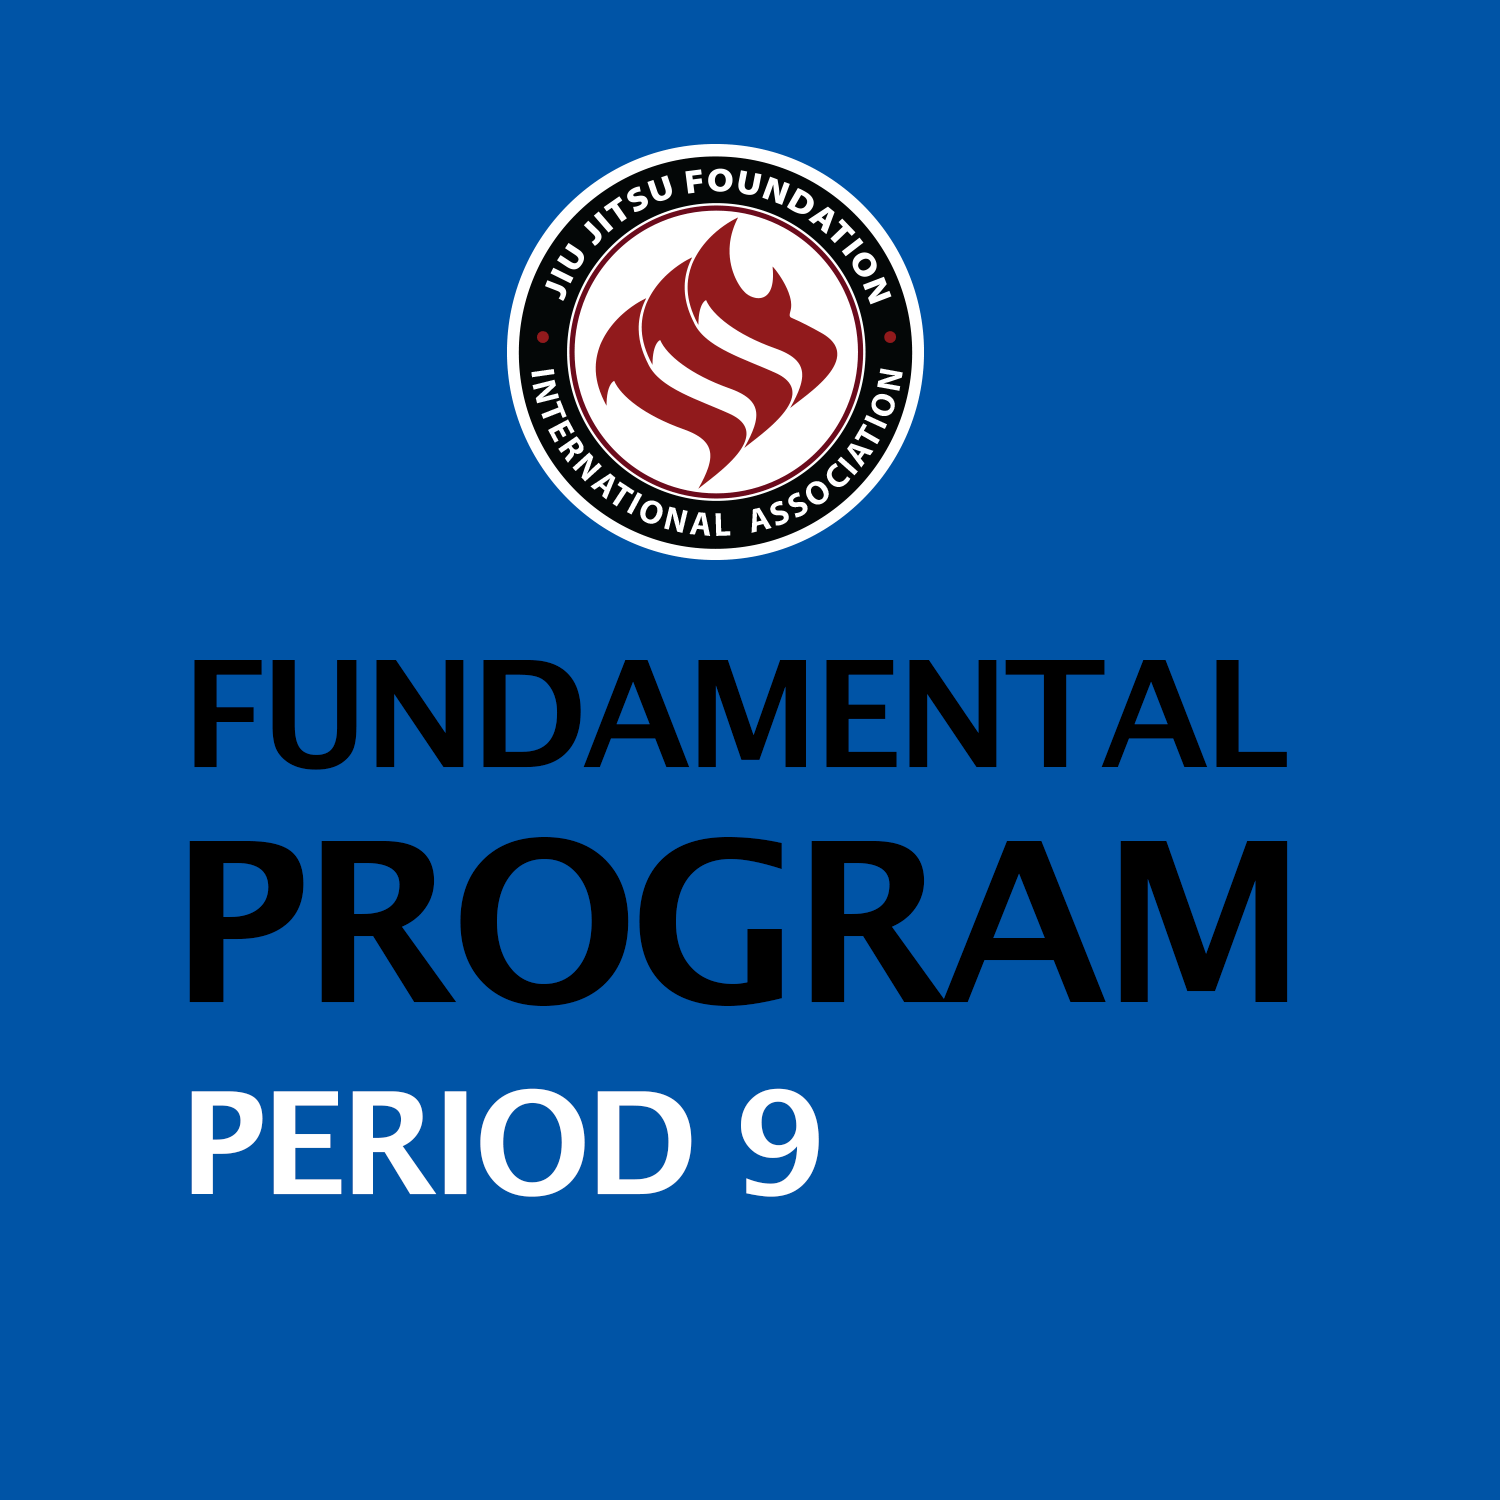 Fundamental period 9